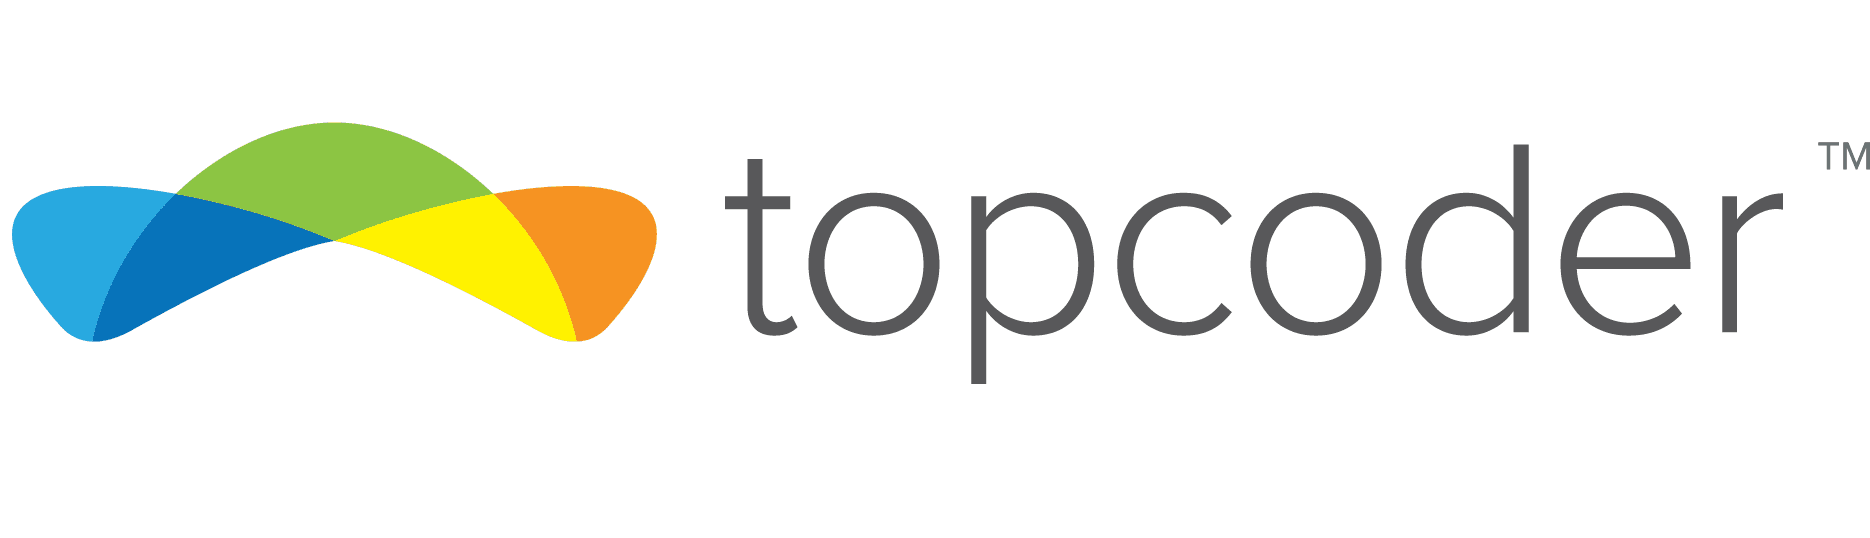 topcoder logo